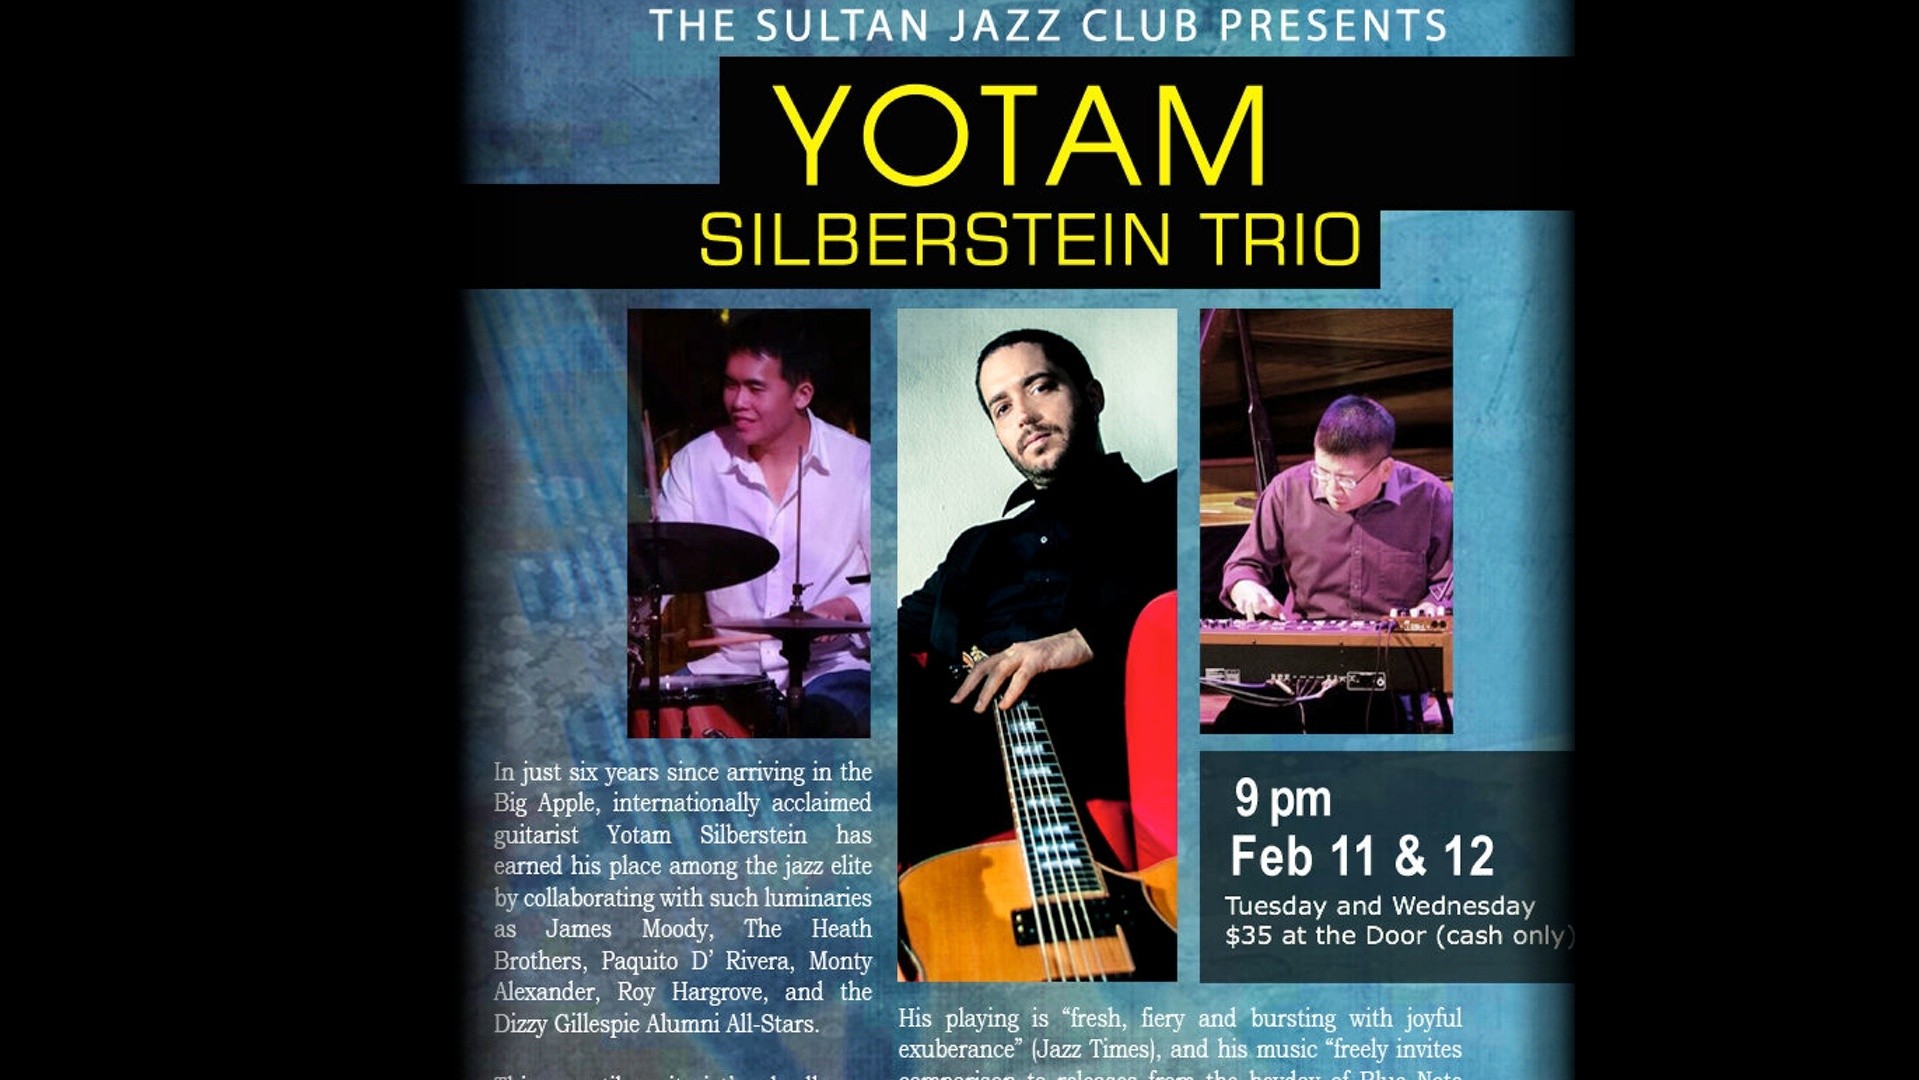 Yotam Silberstein Live at the Sultan Jazz Club